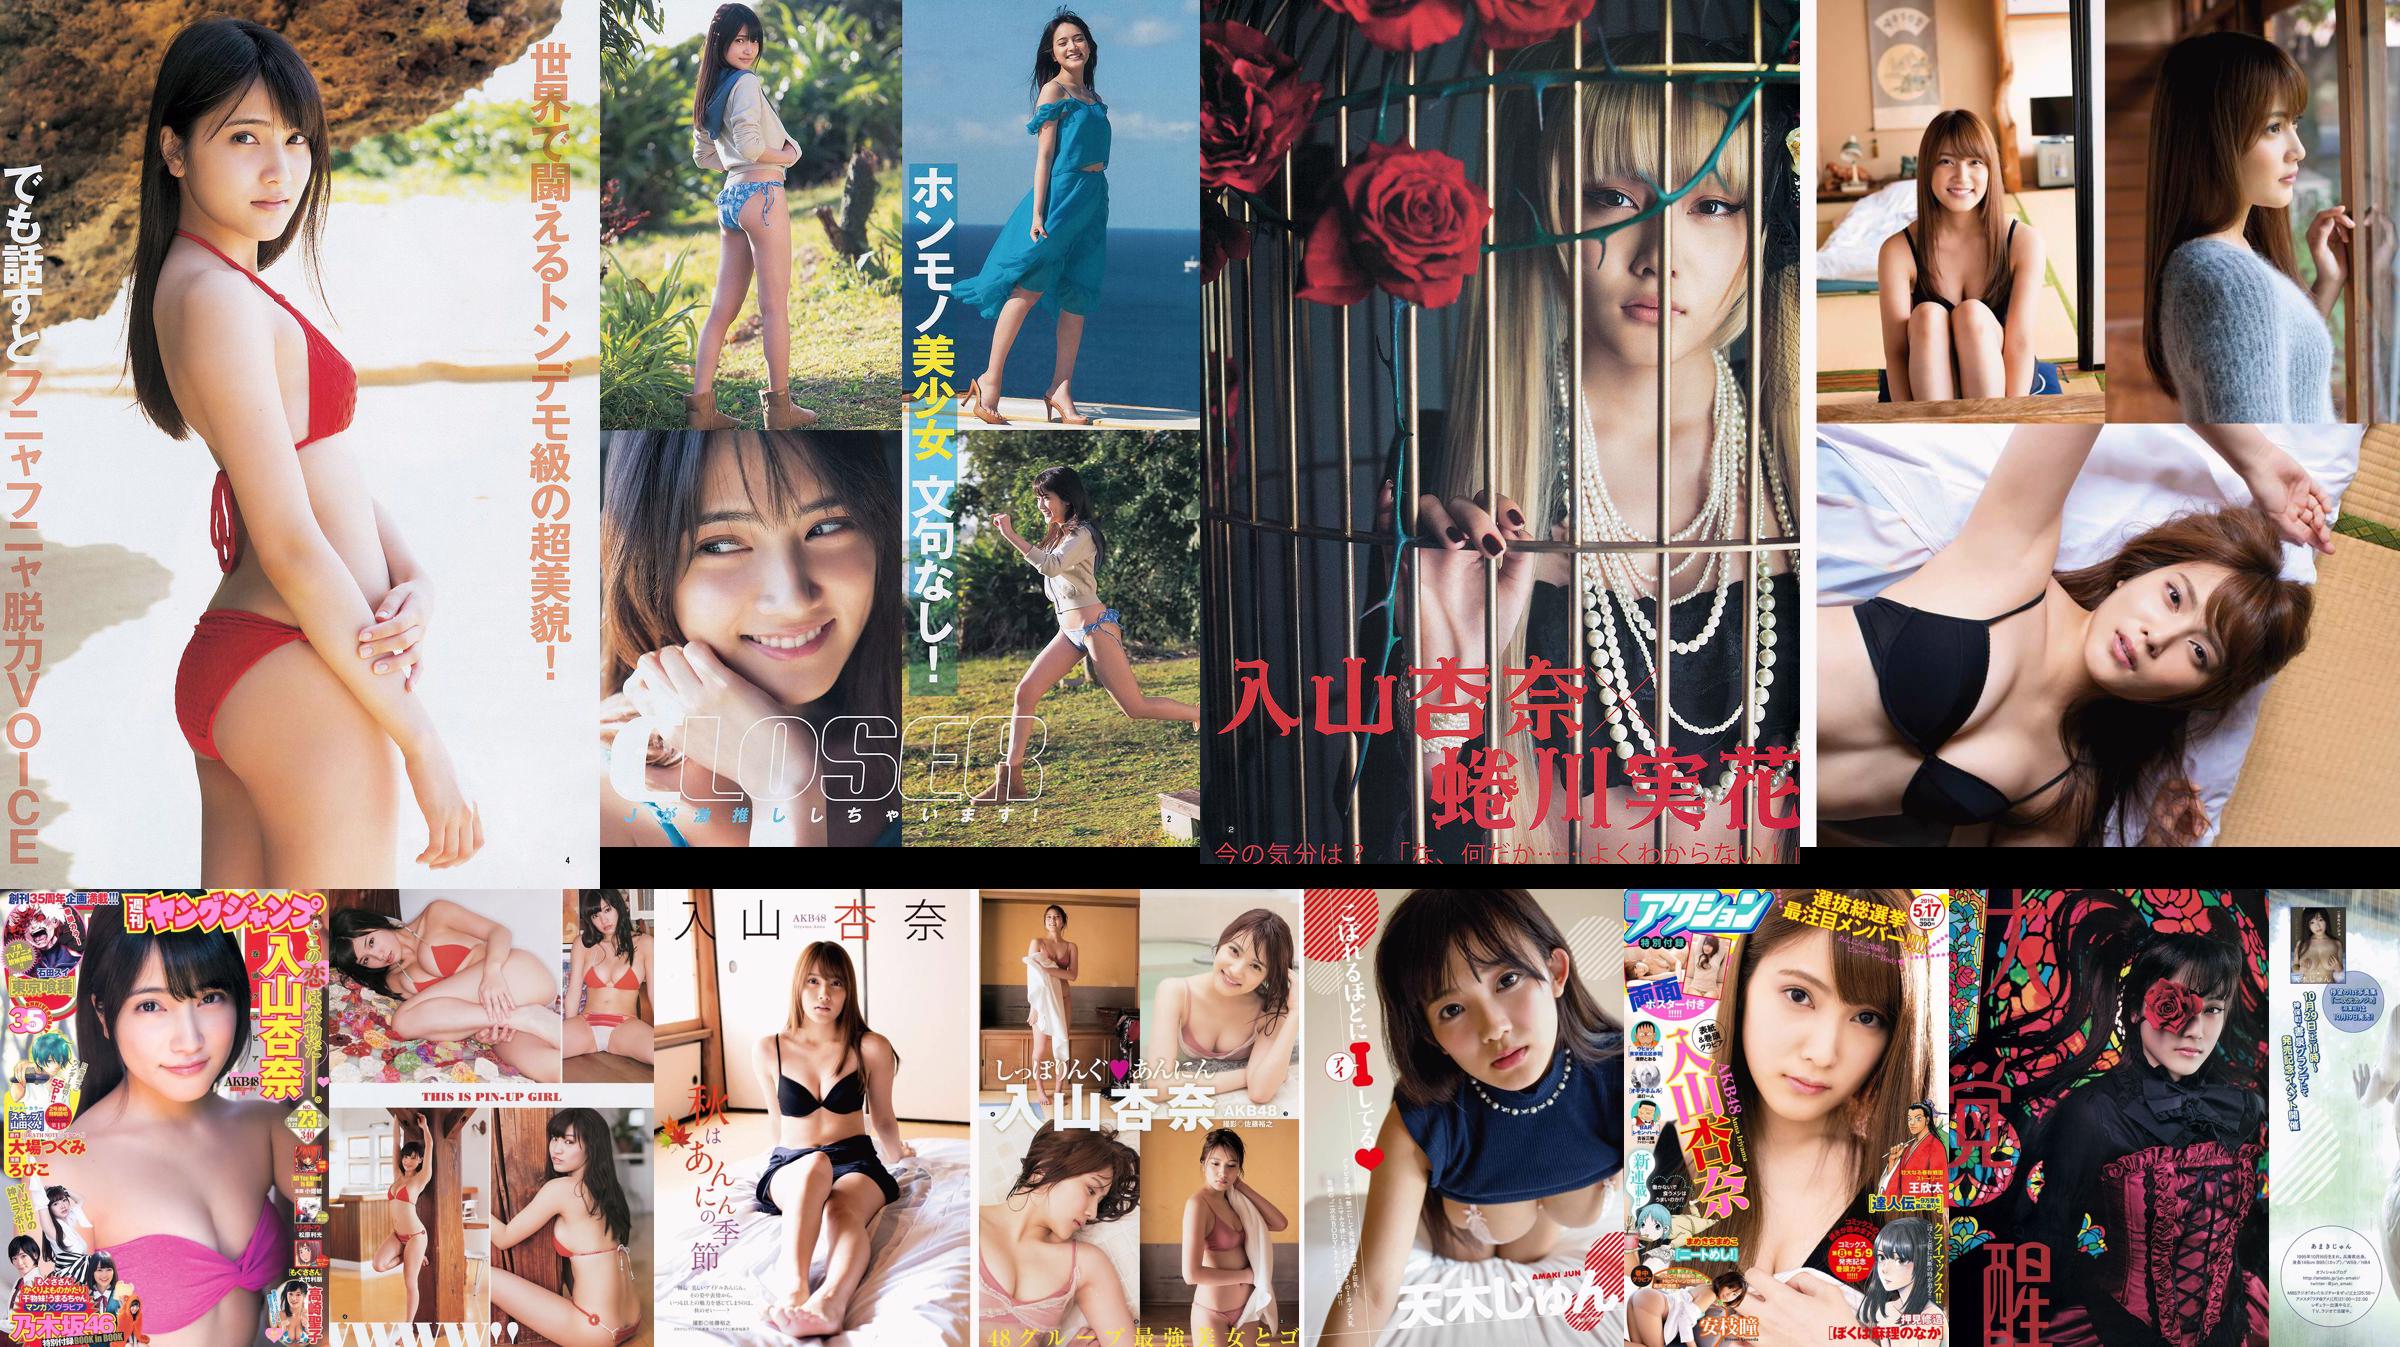 Anna Iriyama Yuuki Mio Furuhata Nao [Wöchentlicher Jungsprung] 2013 Nr. 32 Foto No.96487b Seite 4